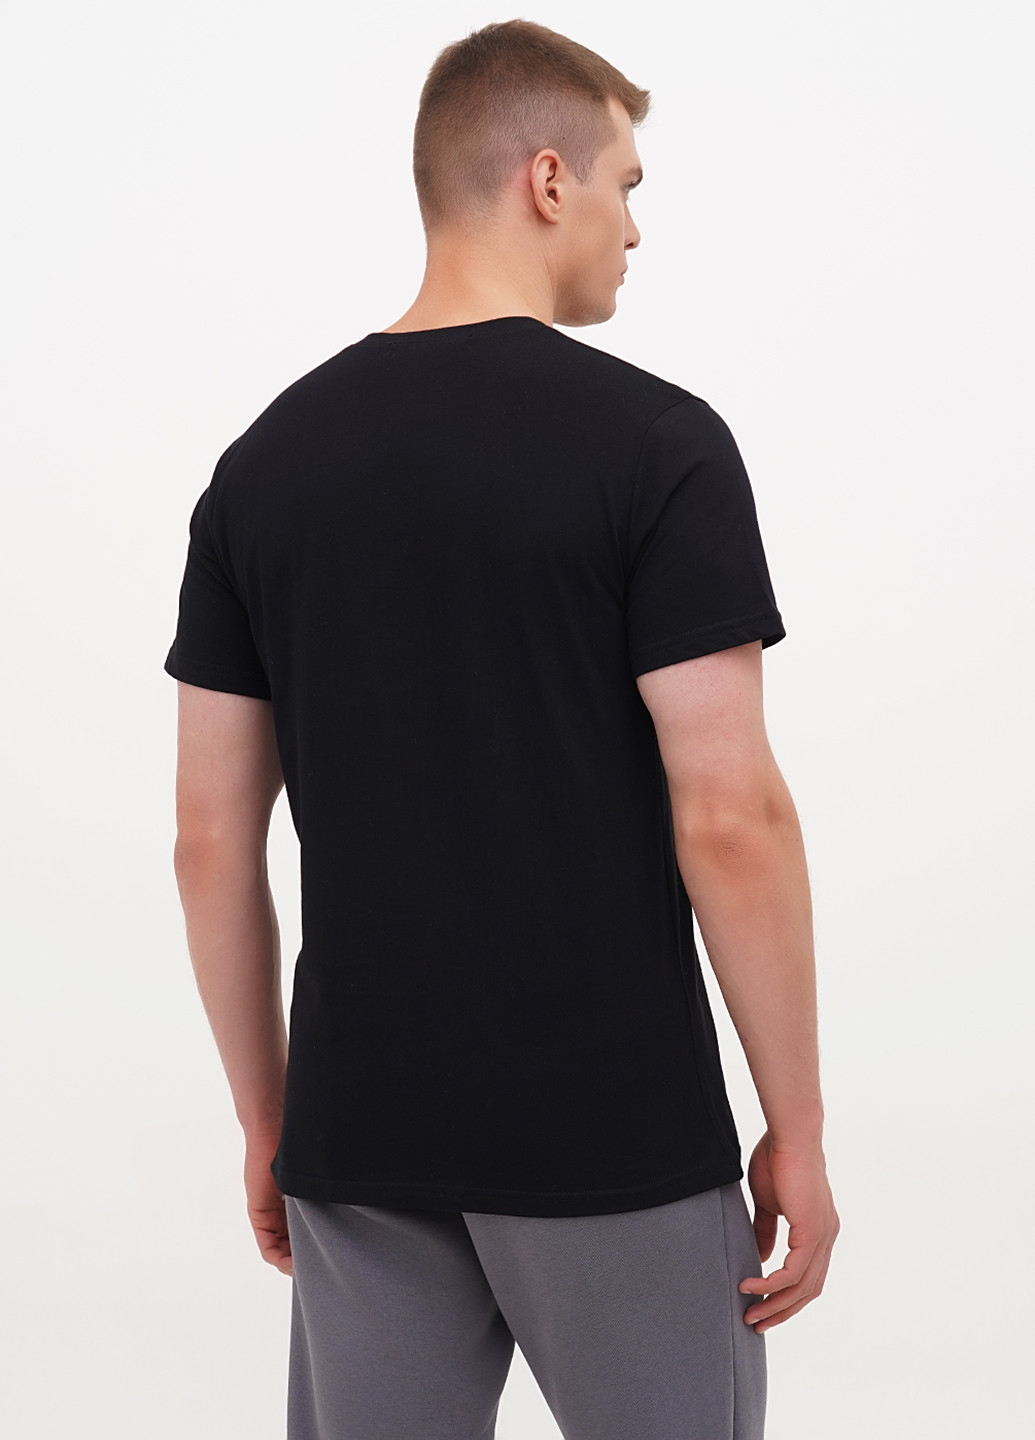 Черная футболка мужская базовая KASTA design